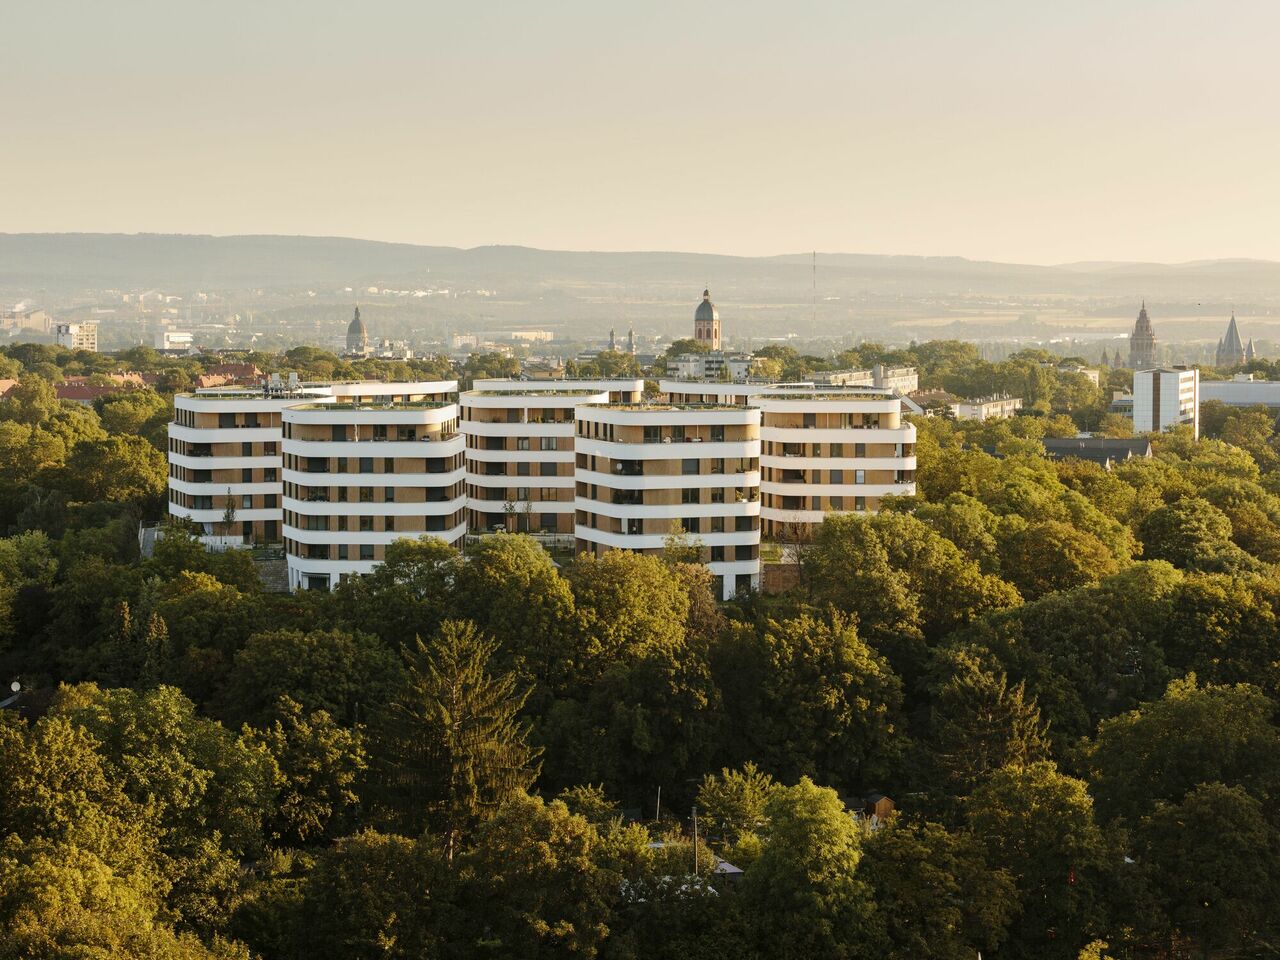 Blick auf das Quartier mit der Stadtsilhouette von Mainz